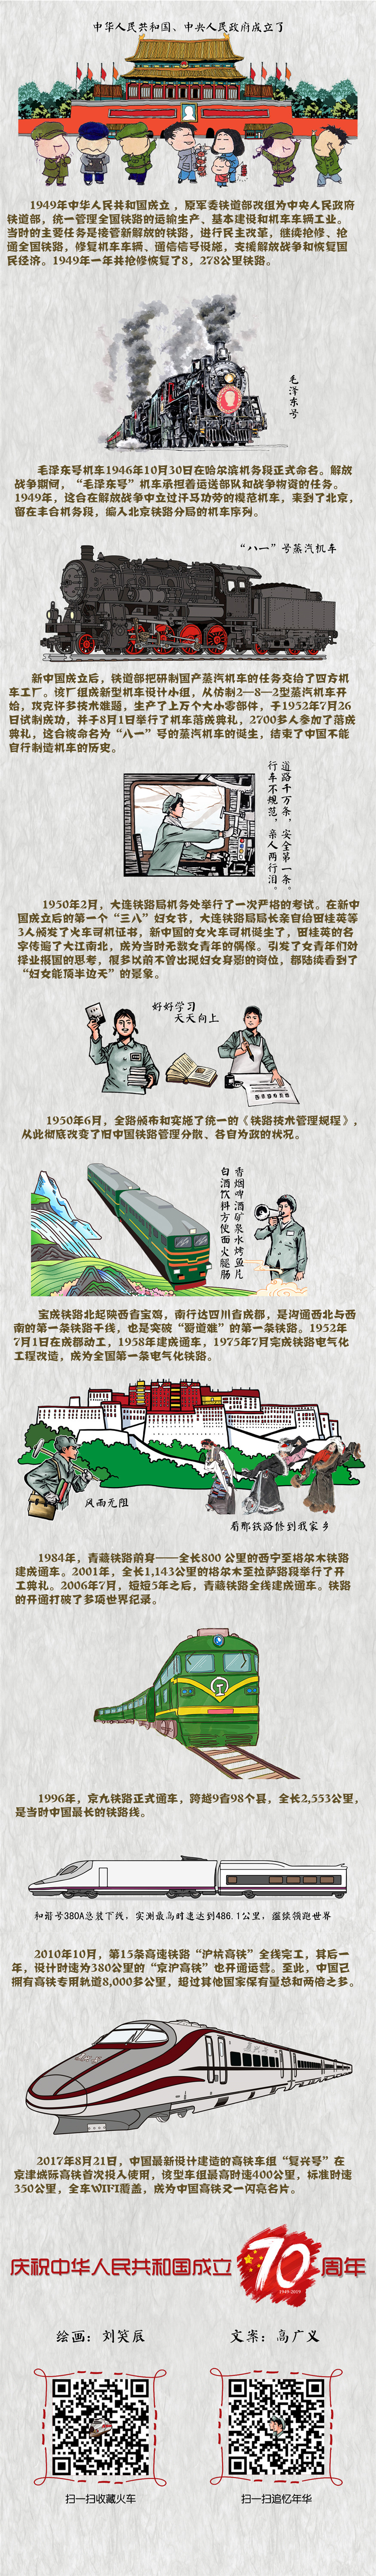 中华人民共和国成立后的铁路发展史